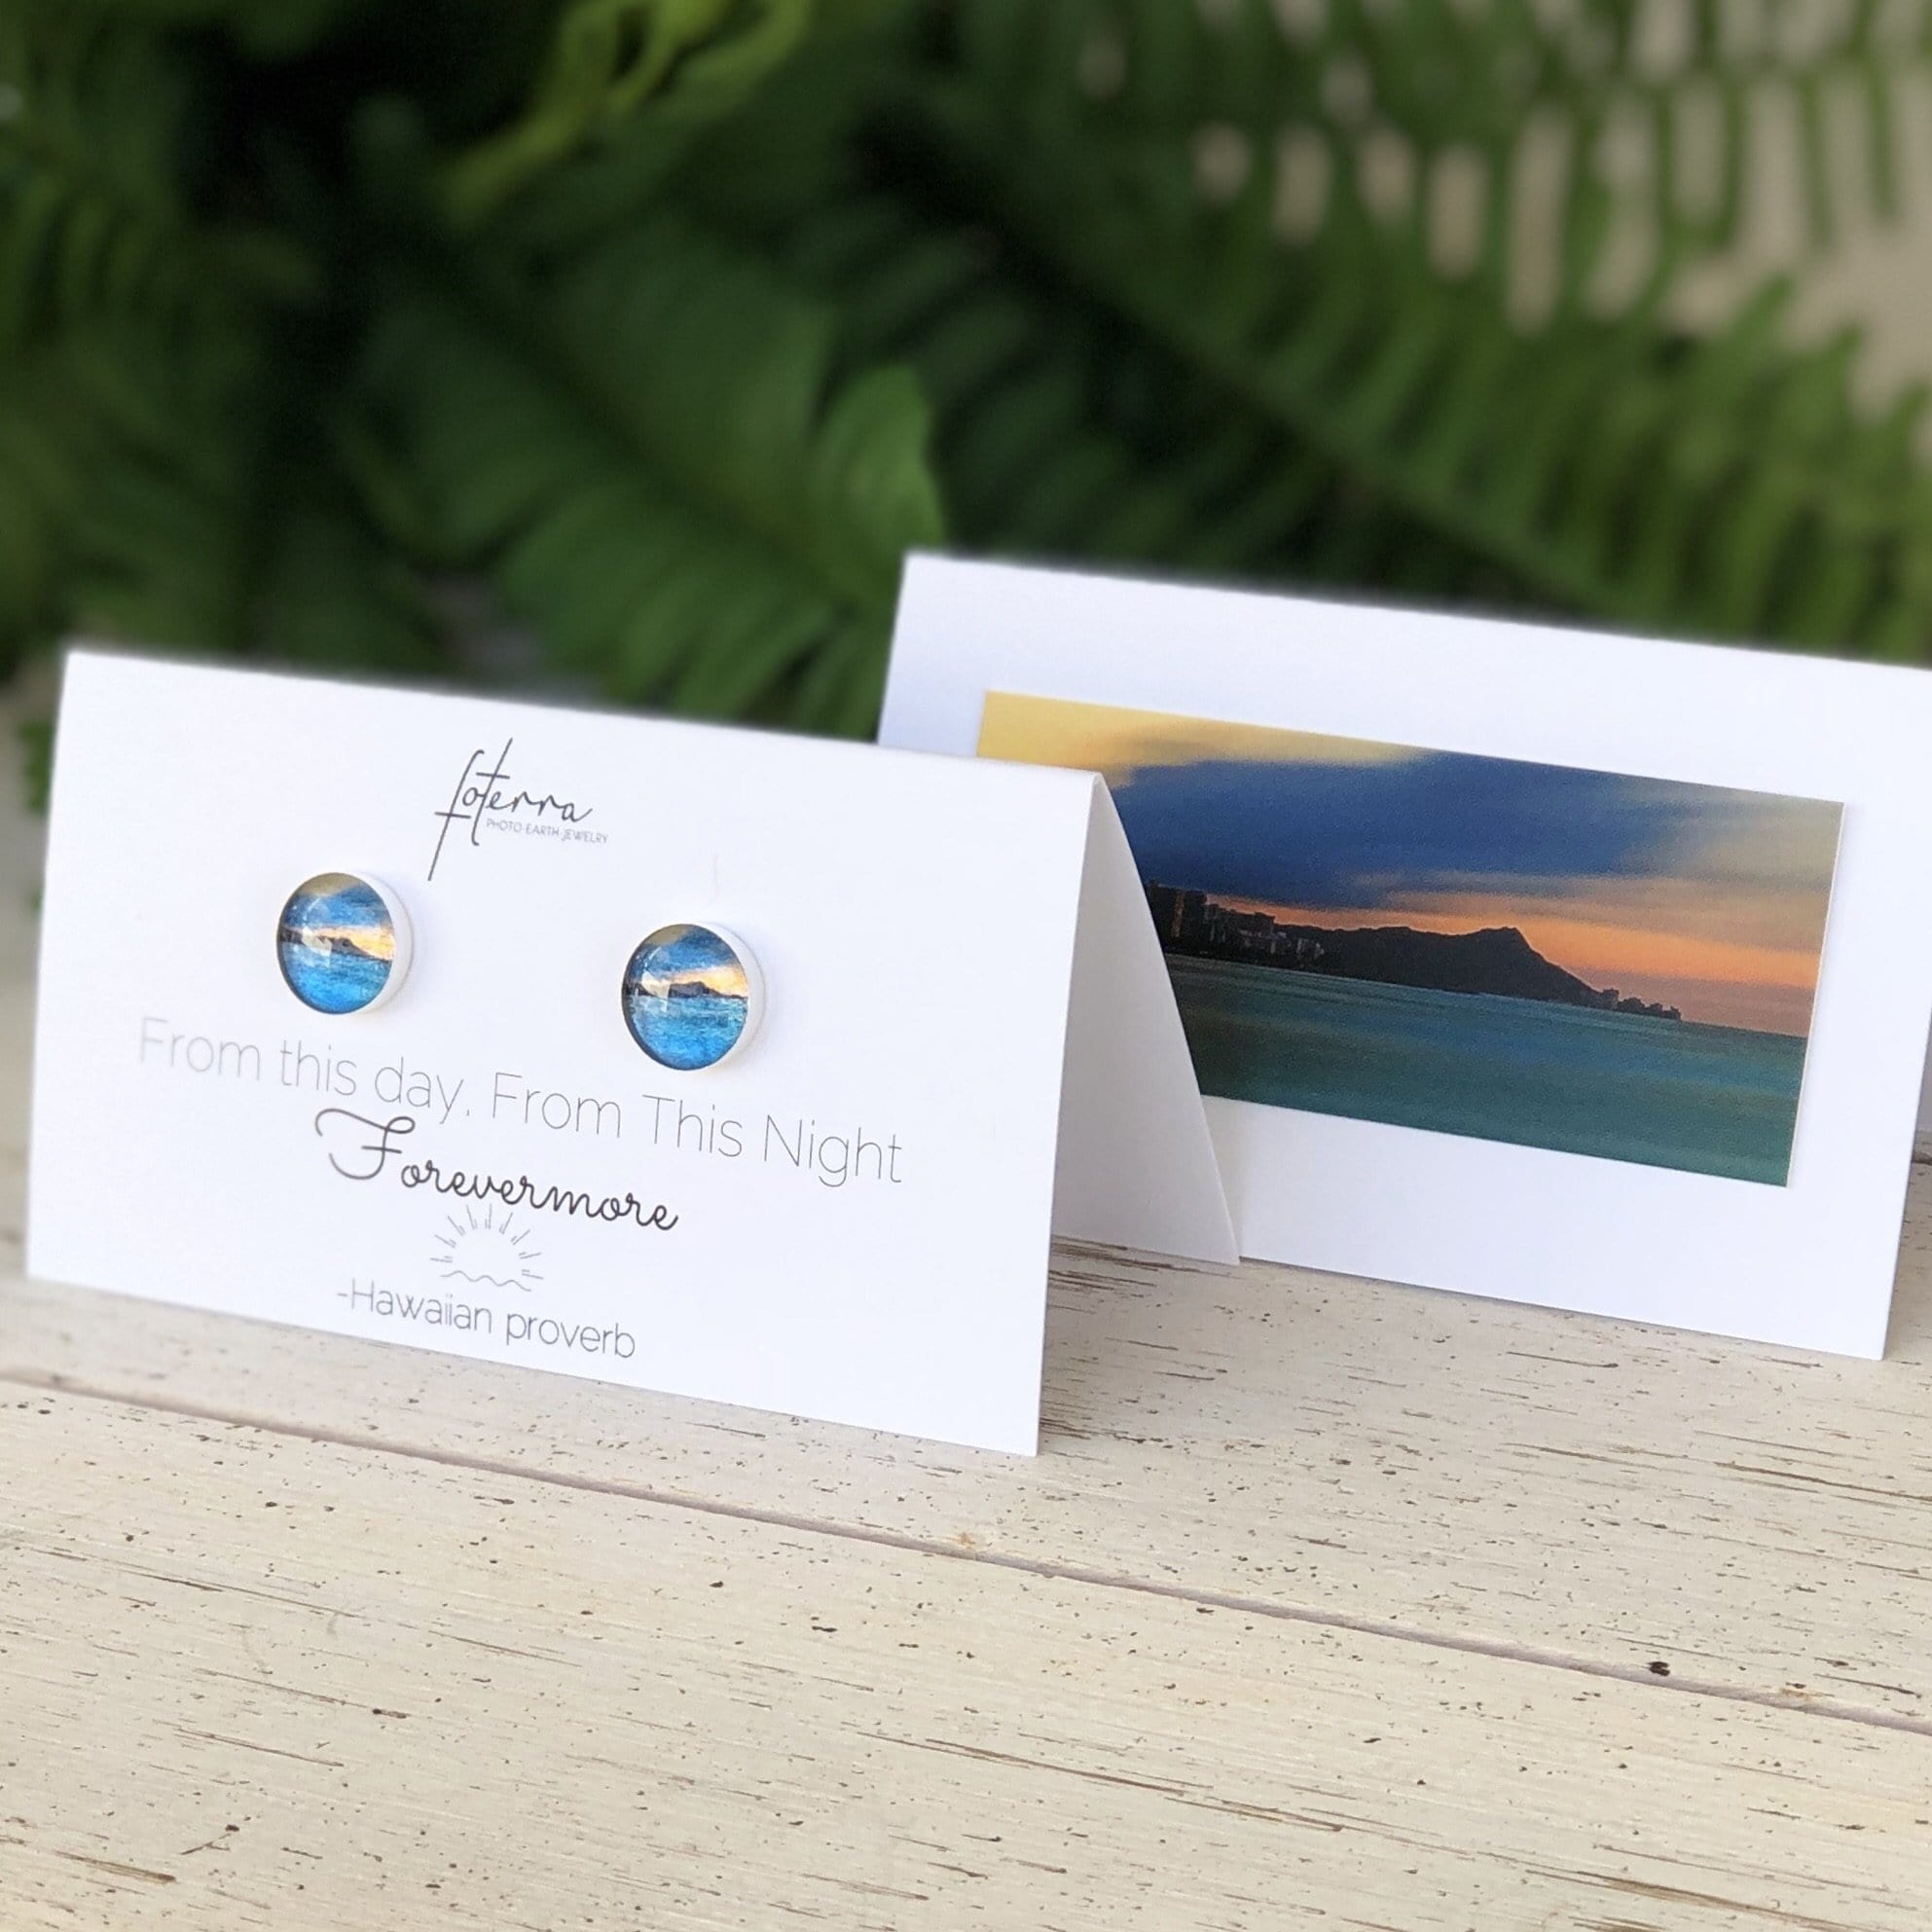 Oahu's Diamond Head Post Earrings by Foterra Jewelry